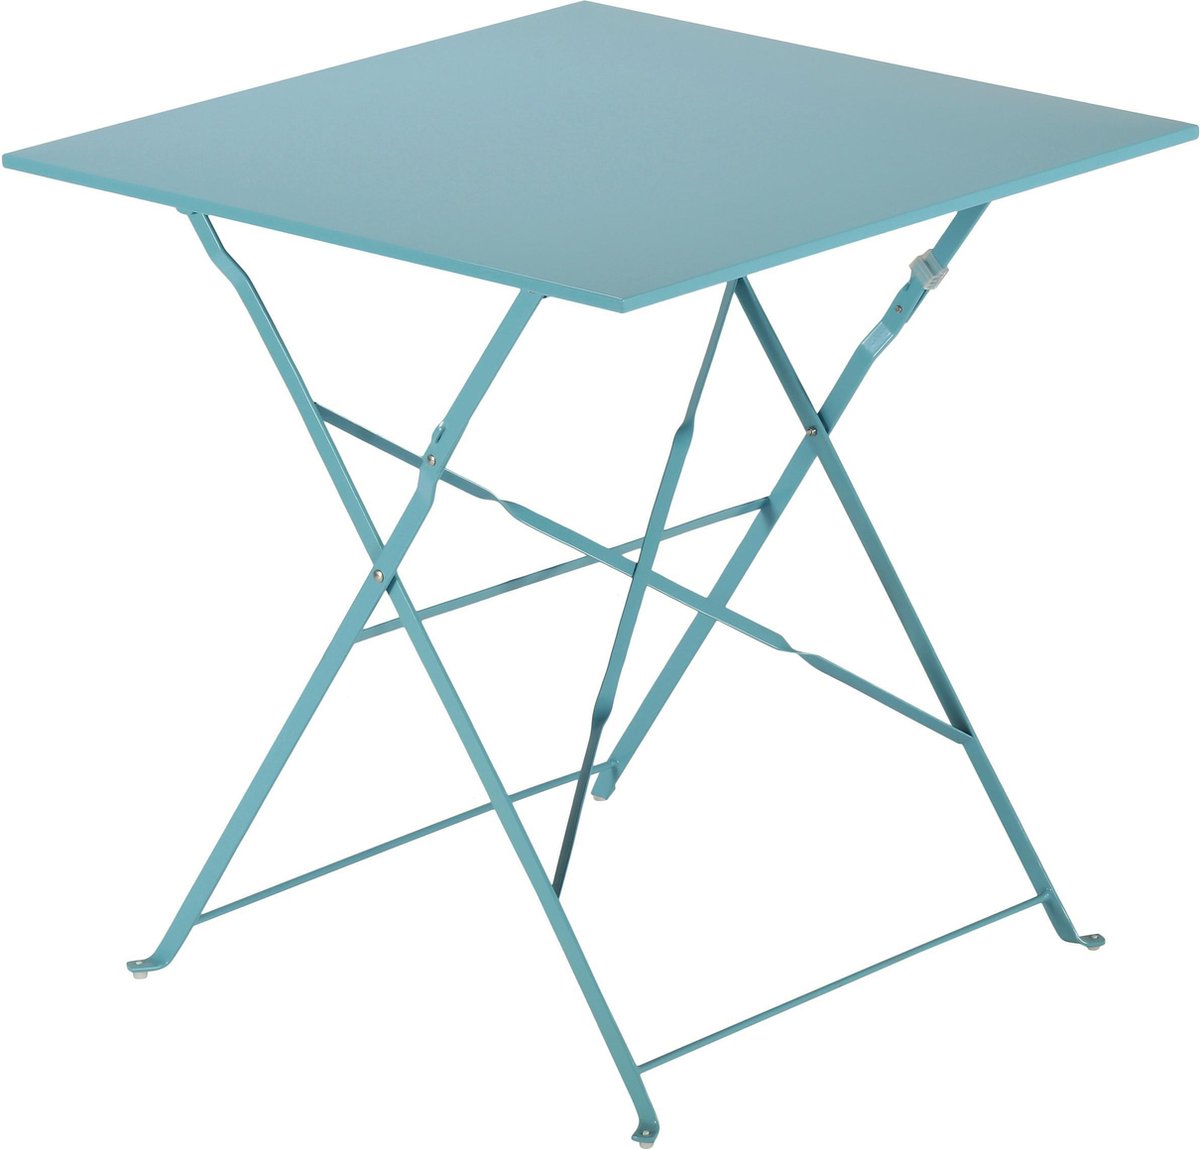 NATERIAL - tuintafel vierkant FLORA - 2 personen - bistrotafel 70 x 70 cm - opklapbaar - balkontafel - klaptafel - bijzettafel - staal - blauw